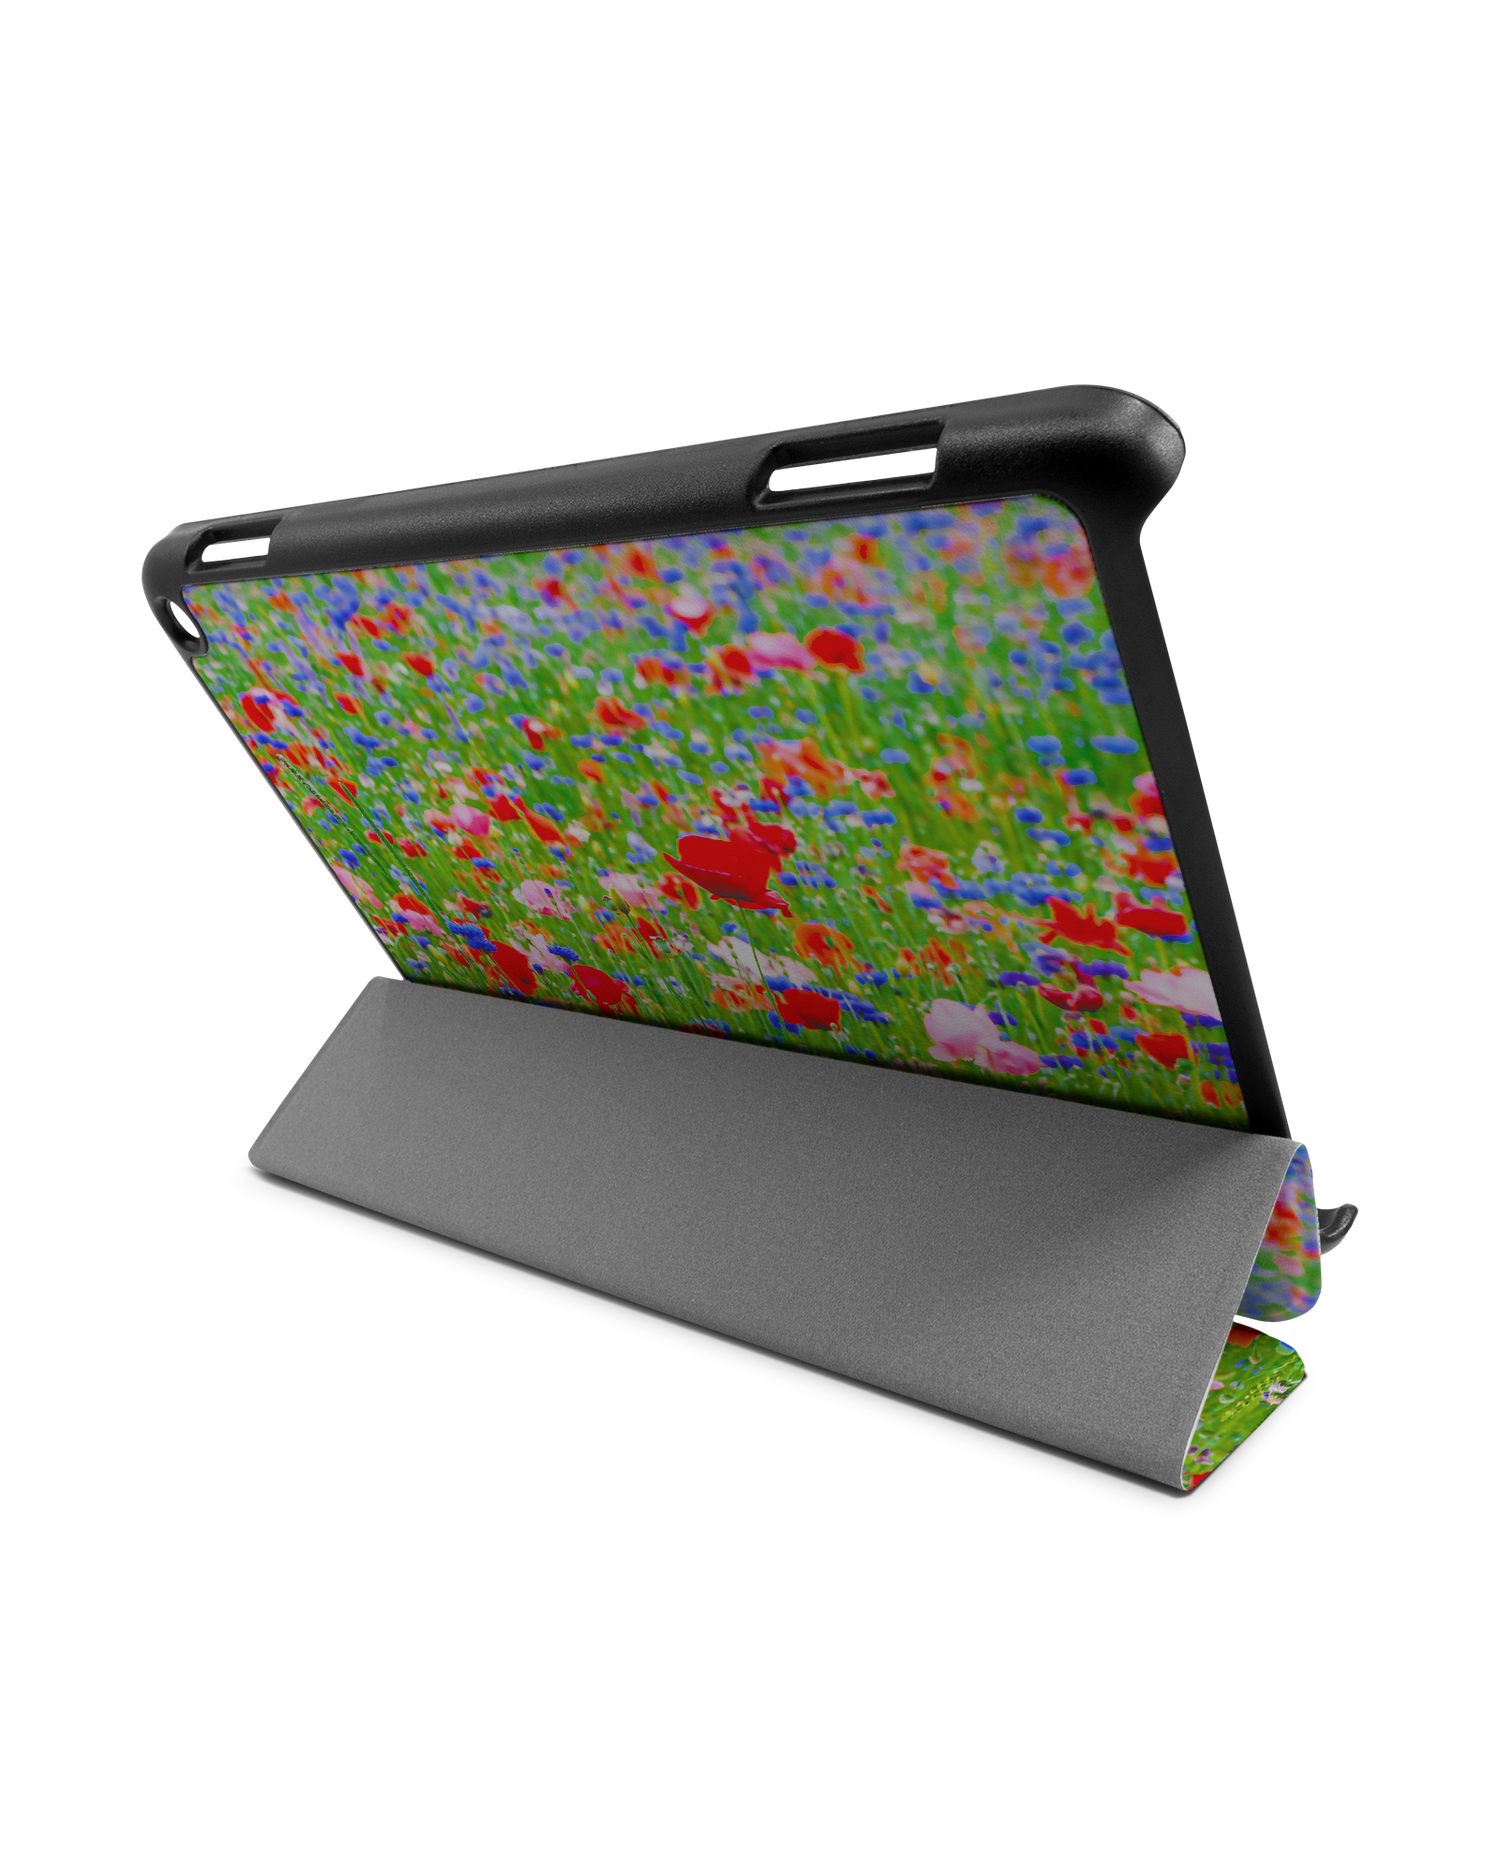 Flower Field Tablet Smart Case für Amazon Fire HD 8 (2022), Amazon Fire HD 8 Plus (2022), Amazon Fire HD 8 (2020), Amazon Fire HD 8 Plus (2020): Aufgestellt im Querformat